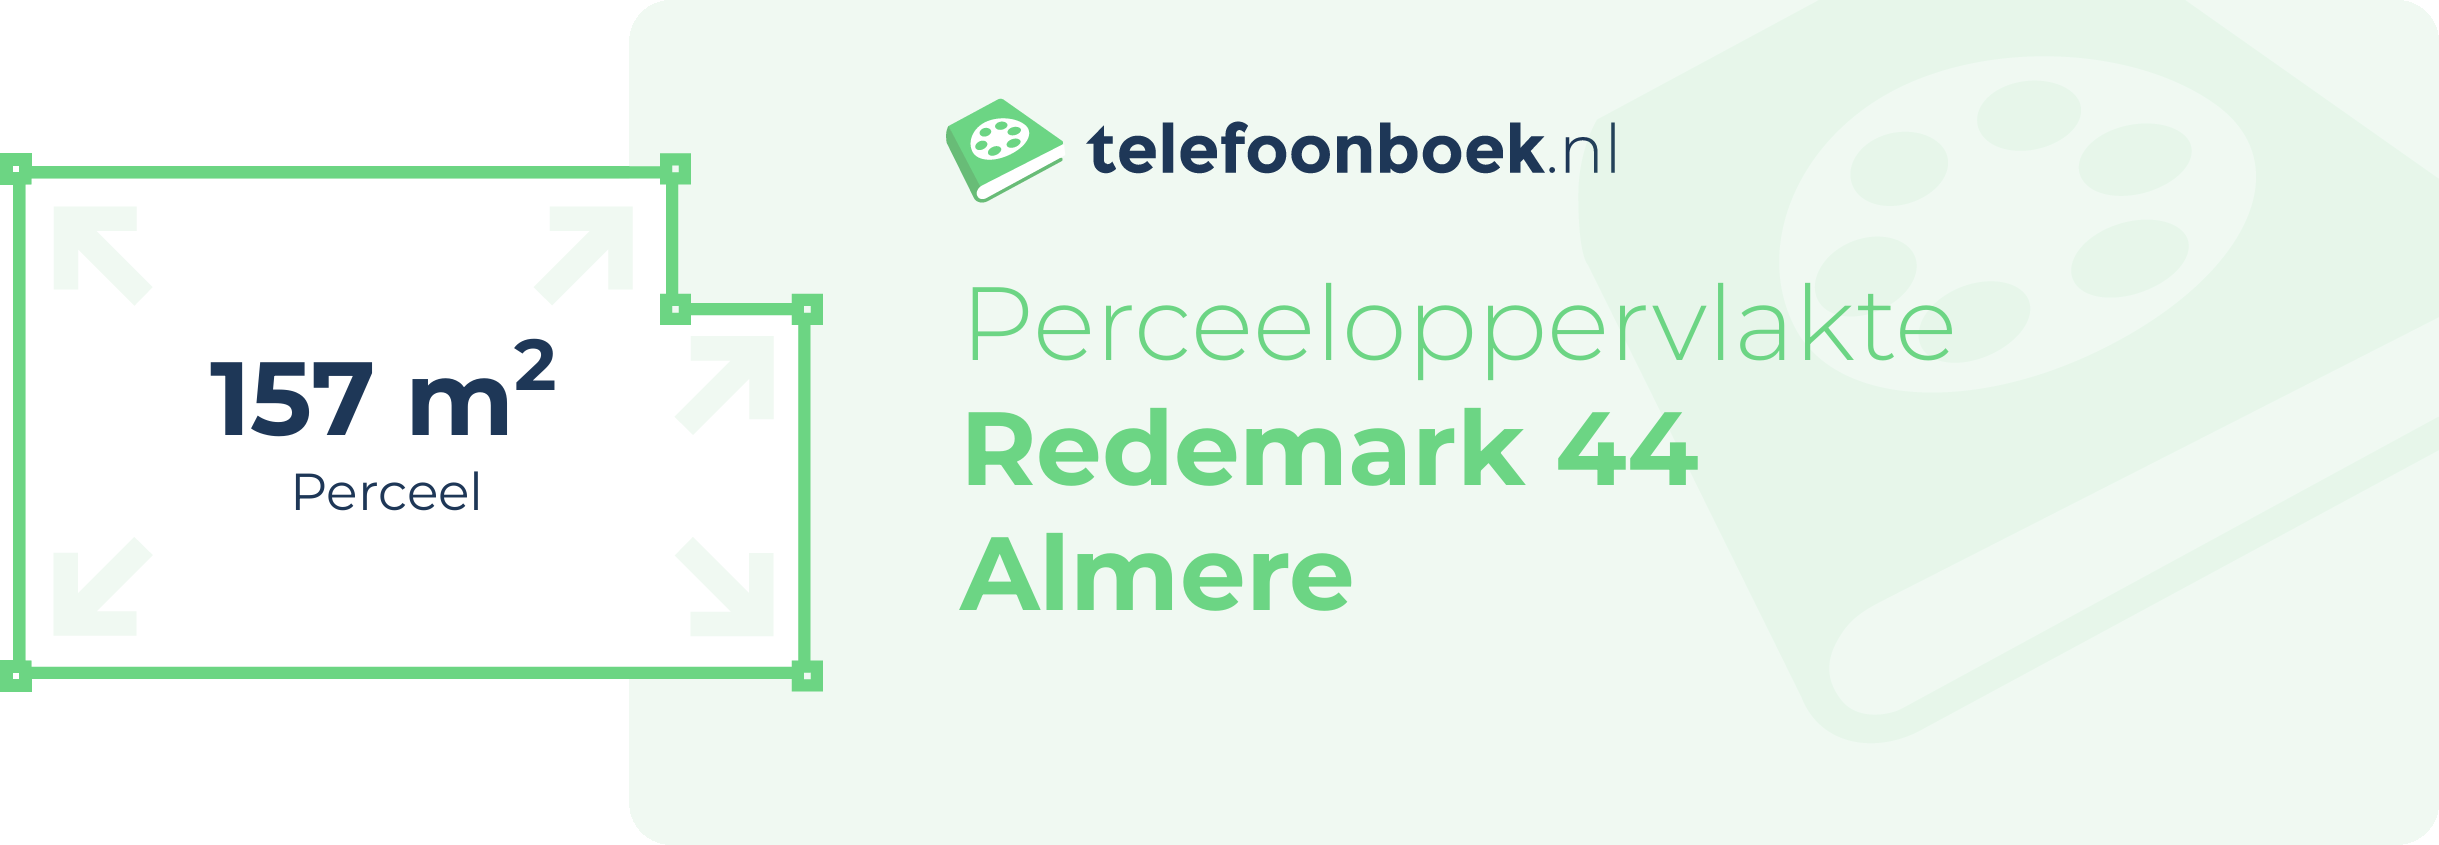 Perceeloppervlakte Redemark 44 Almere